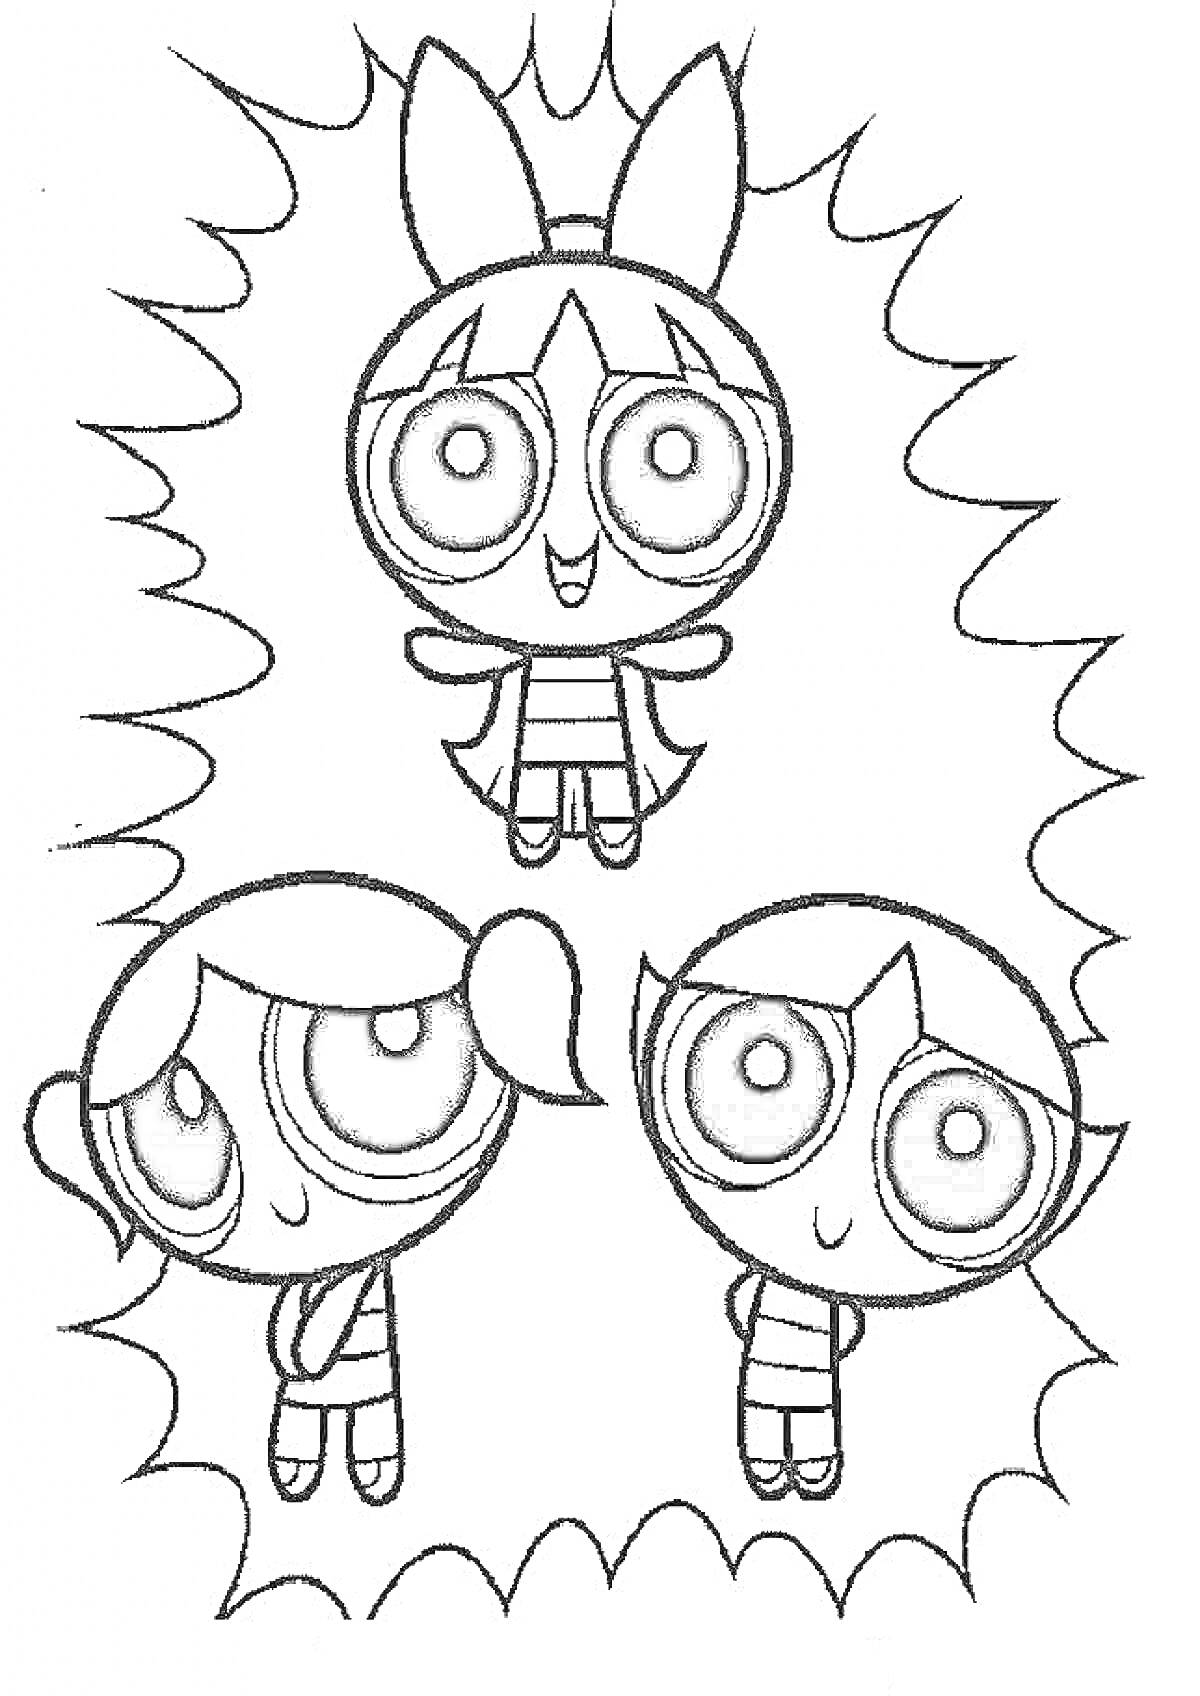 Суперкрошки, три персонажа, окружены рамкой в виде вспышки